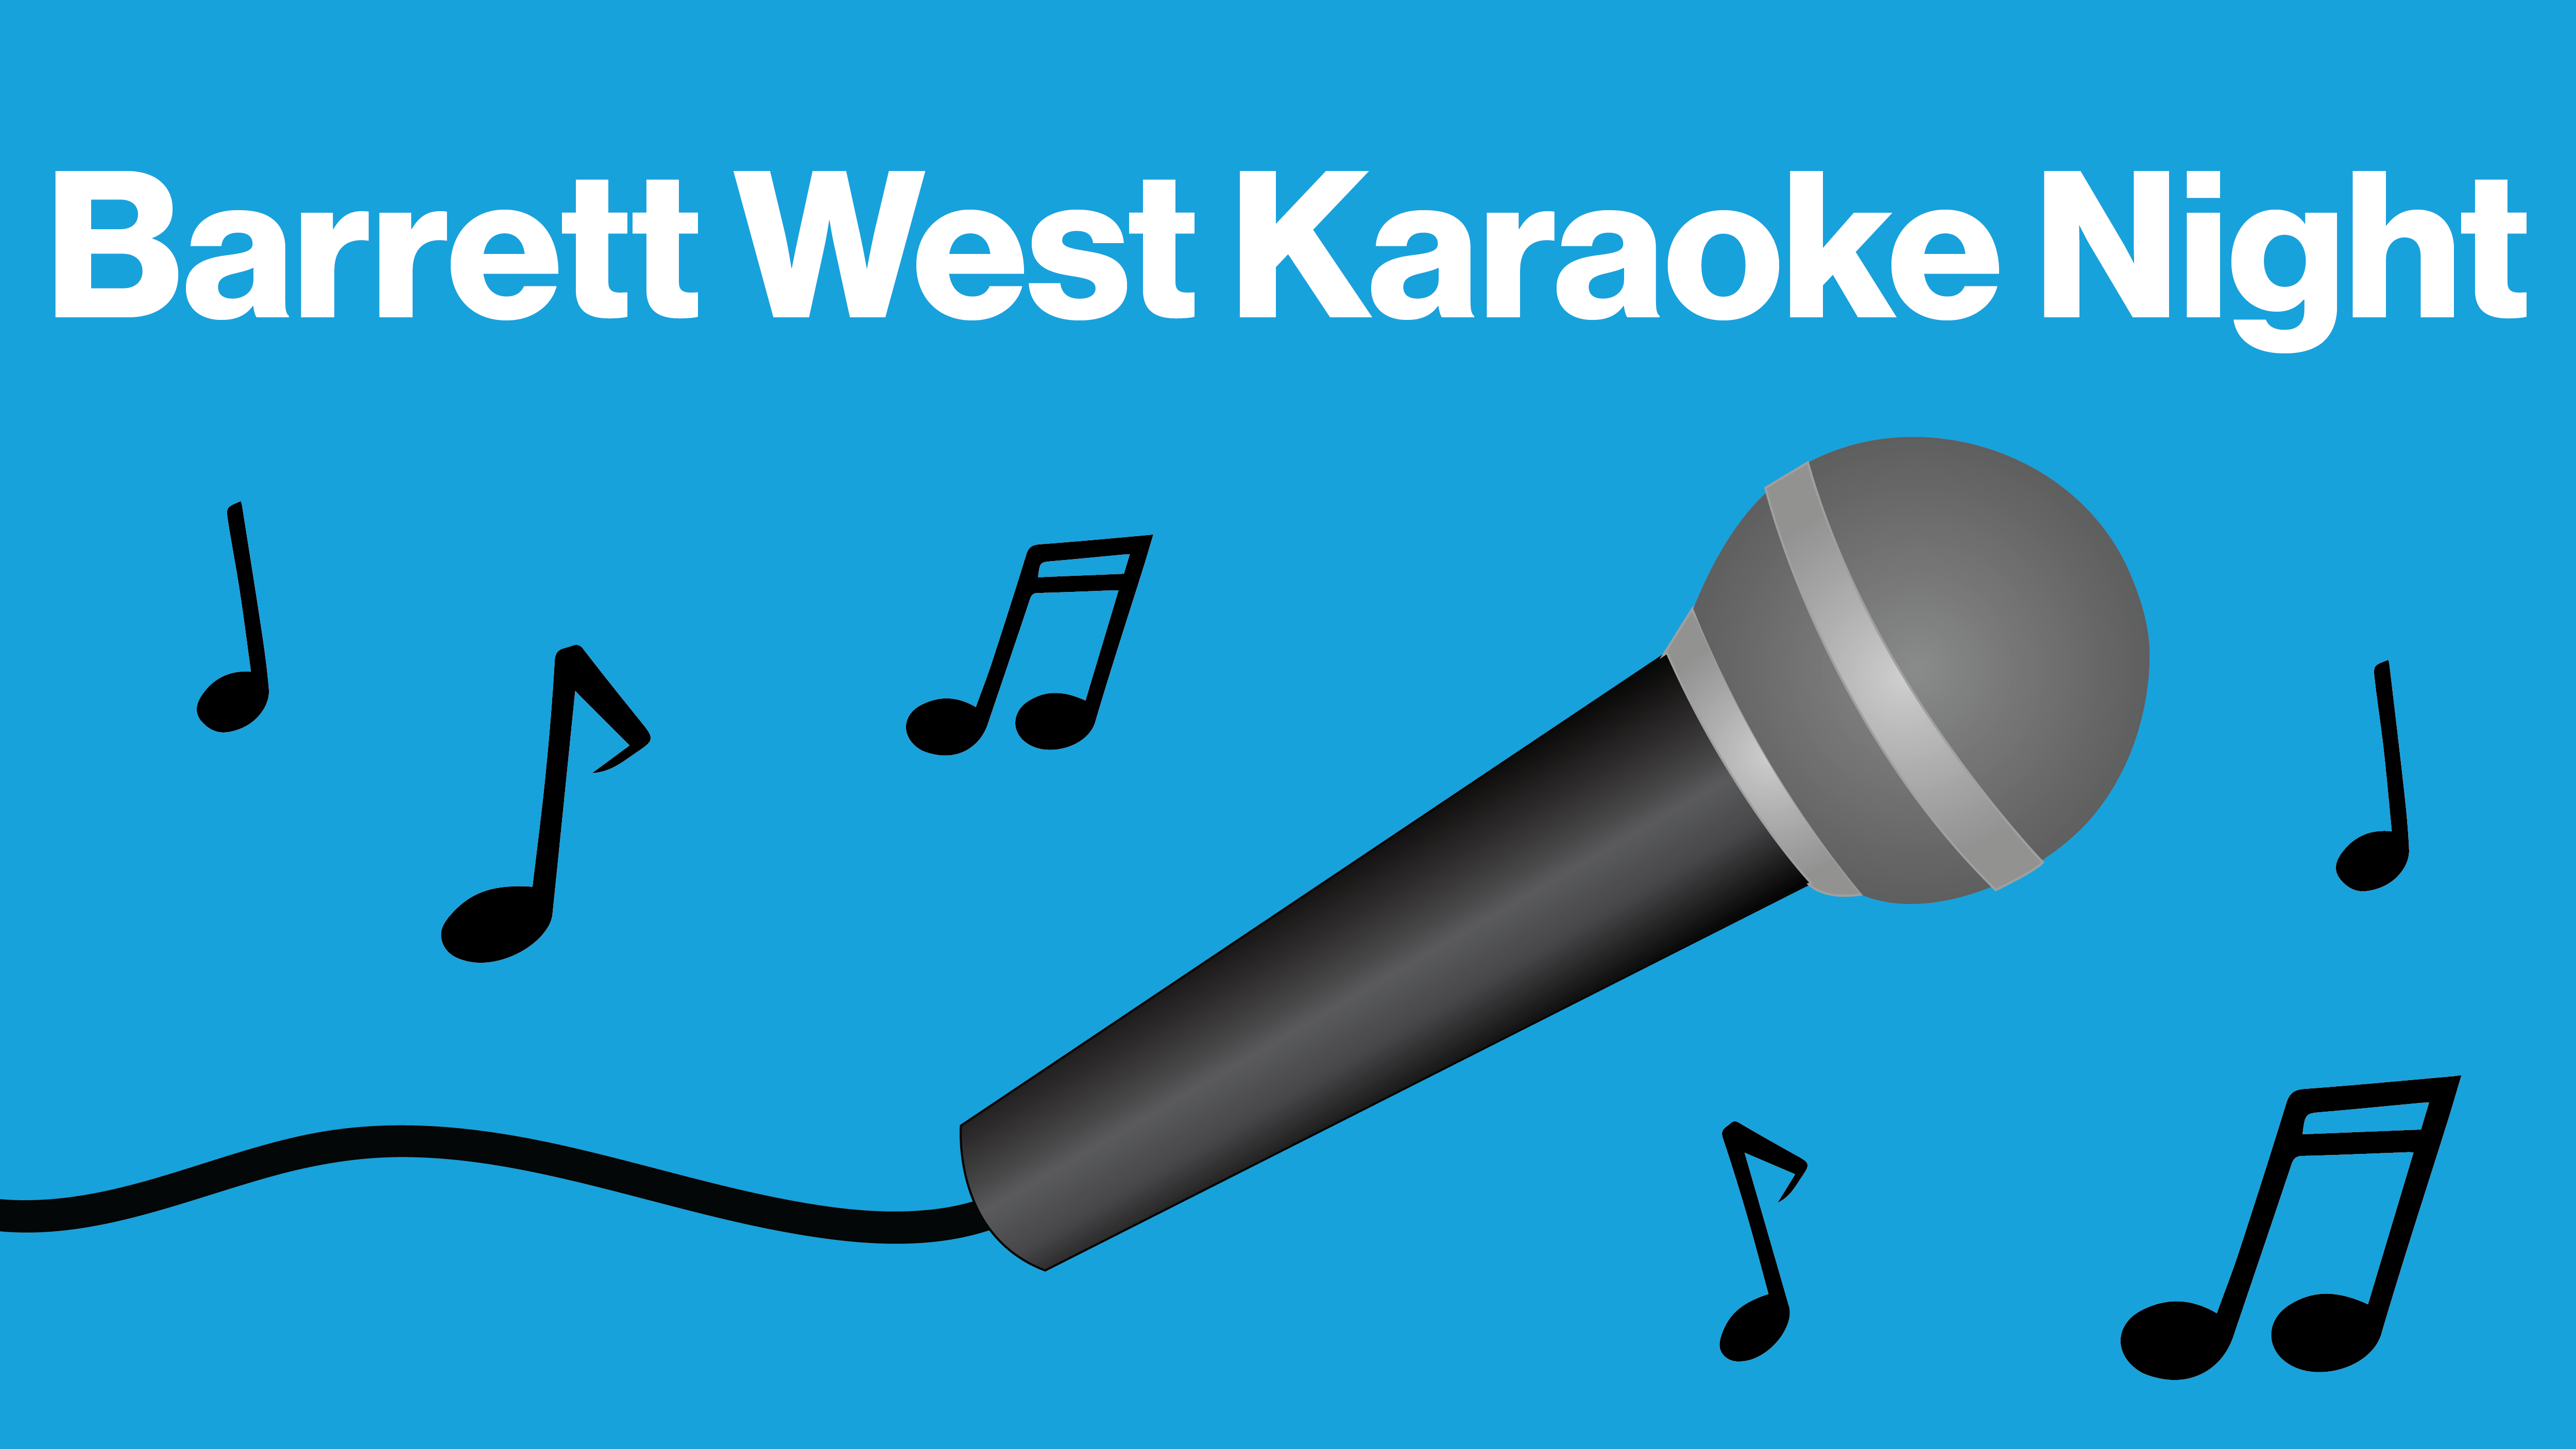 Barrett West Karaoke Night